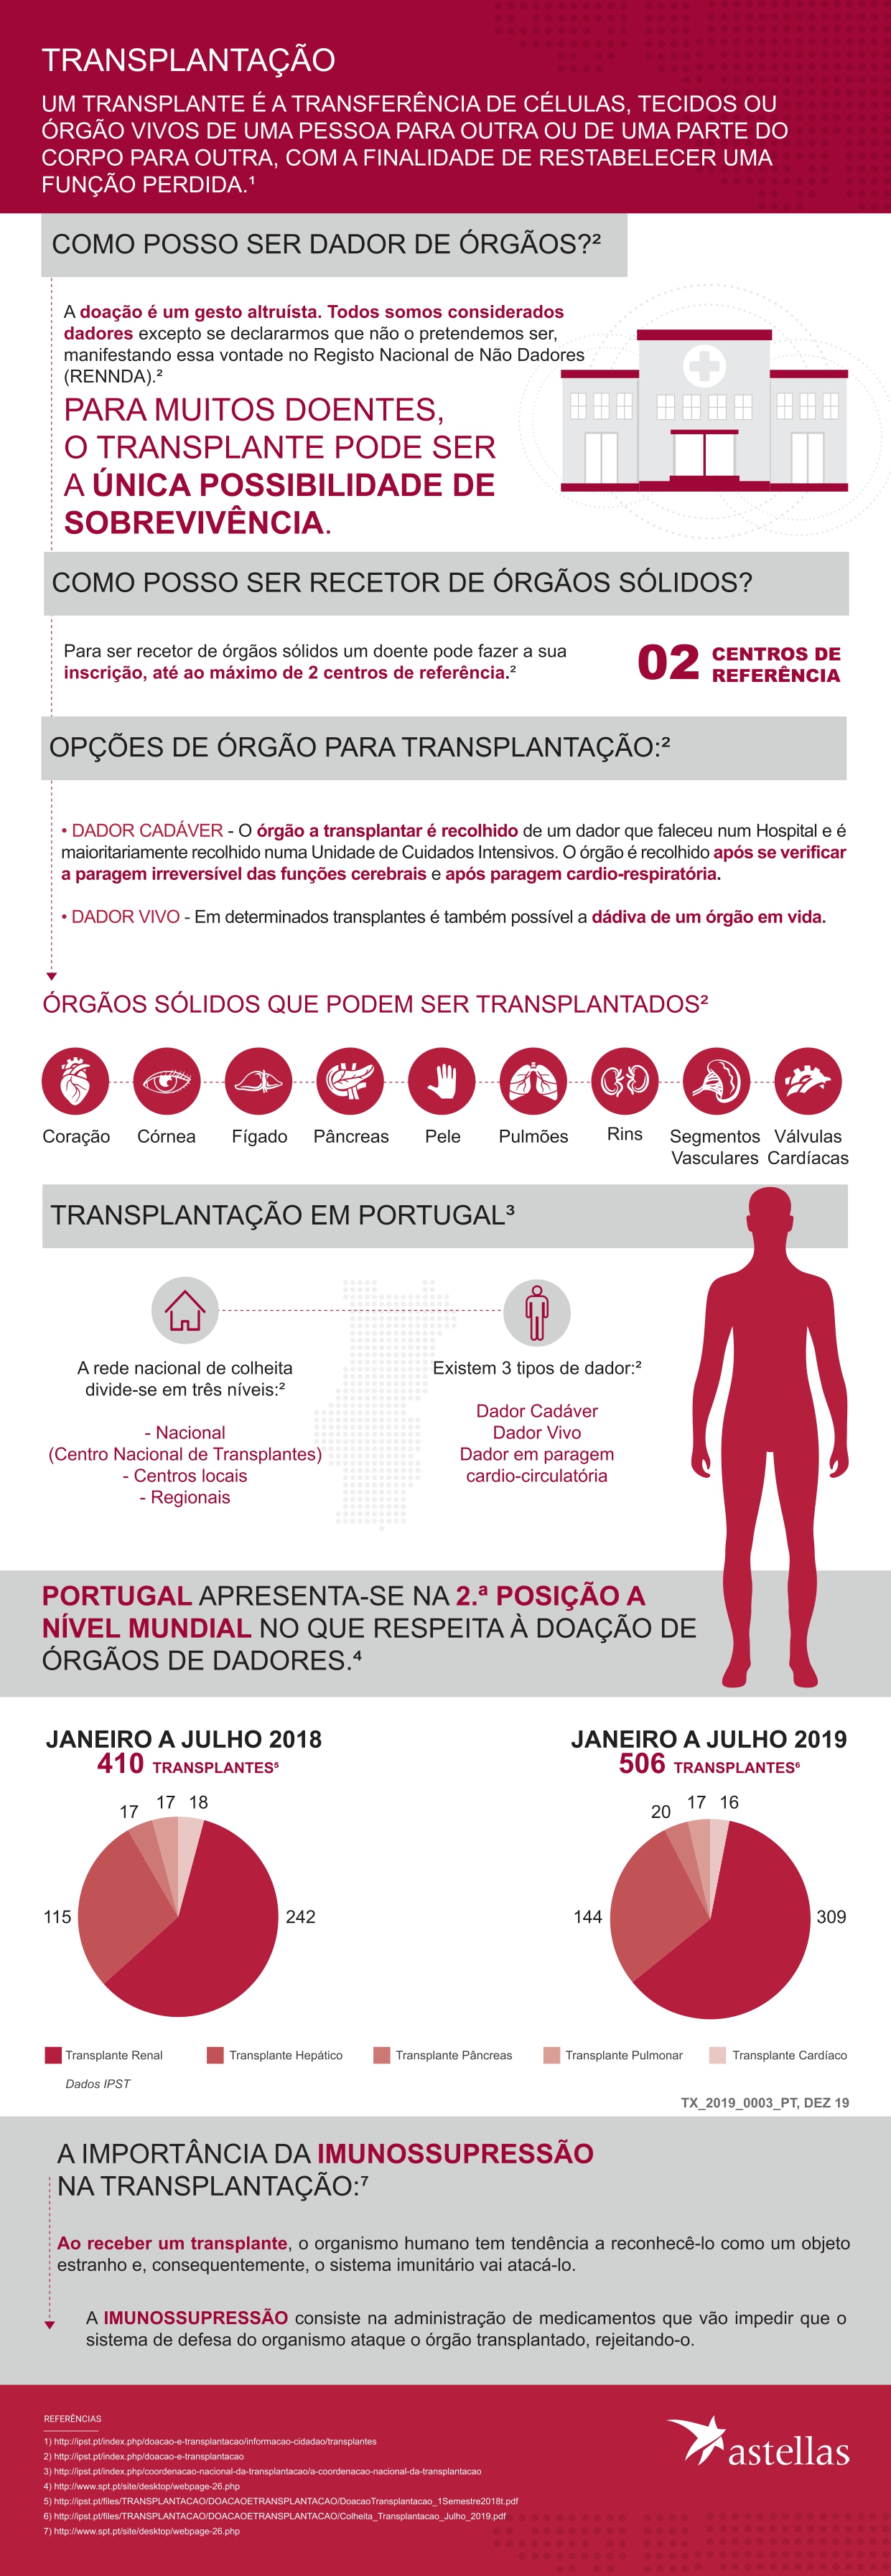 Transplante em Portugal